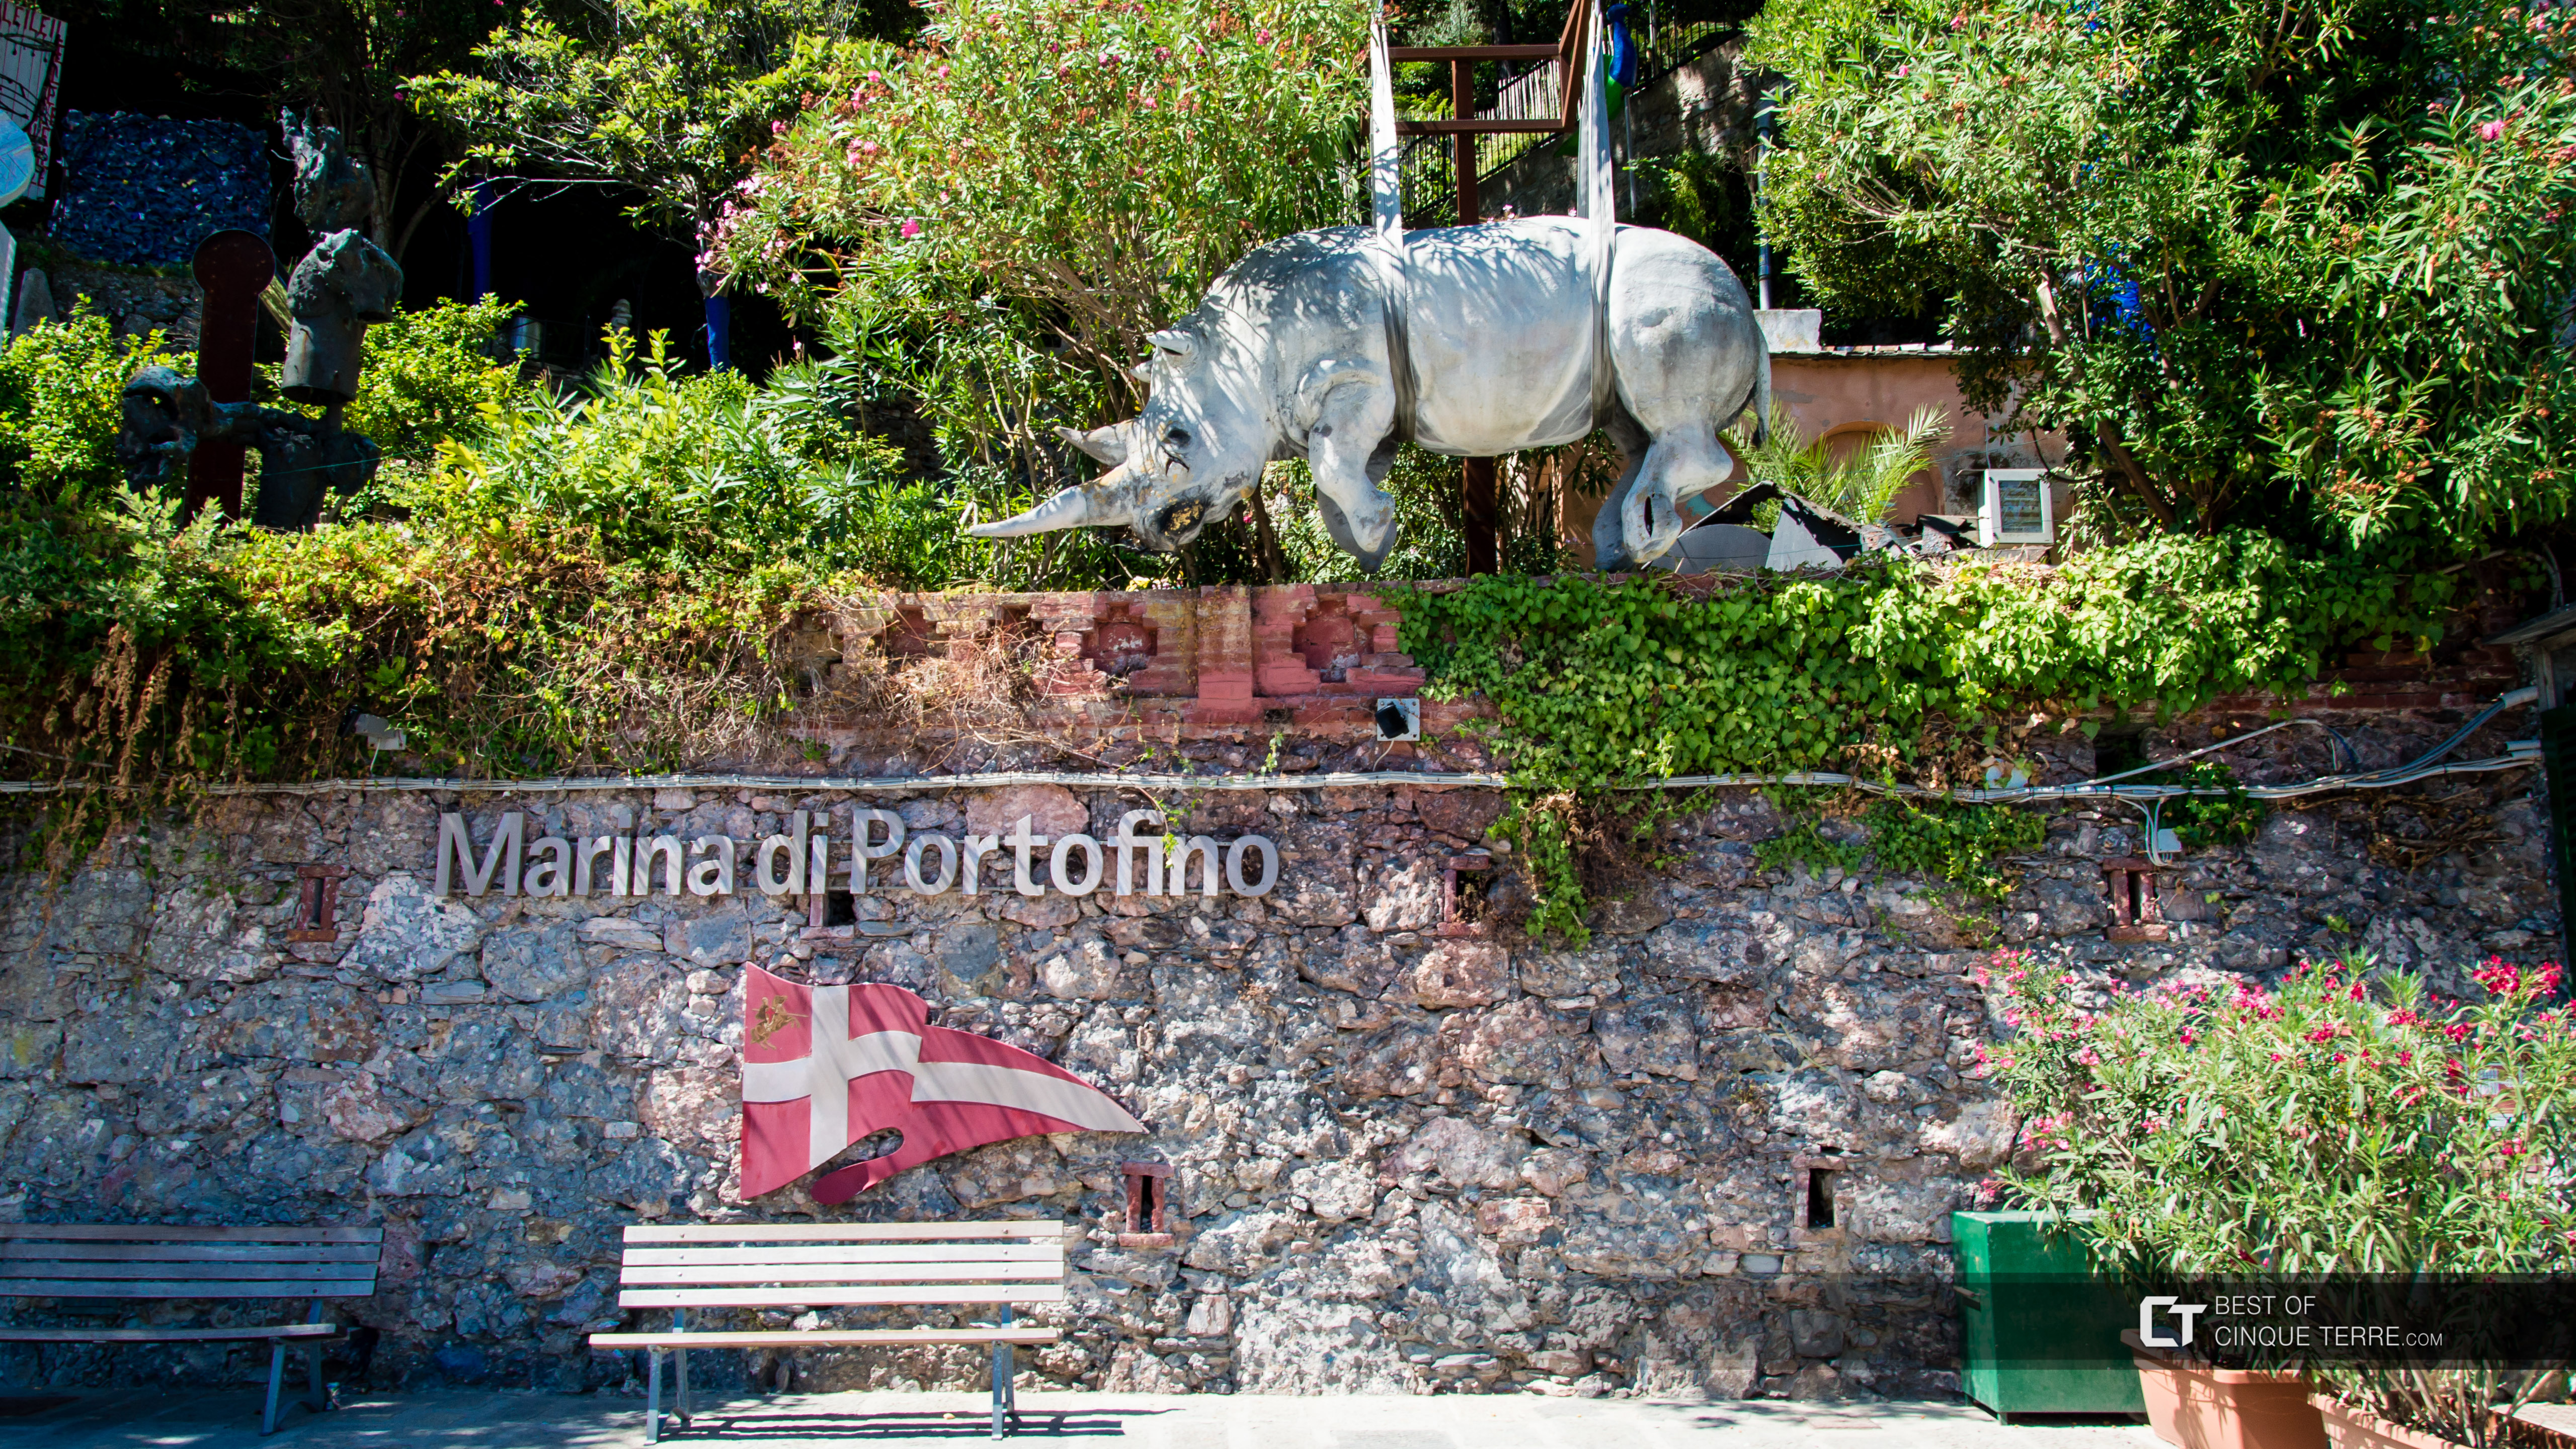 Estátua do rinoceronte, símbolo da cidade, Portofino, Itália